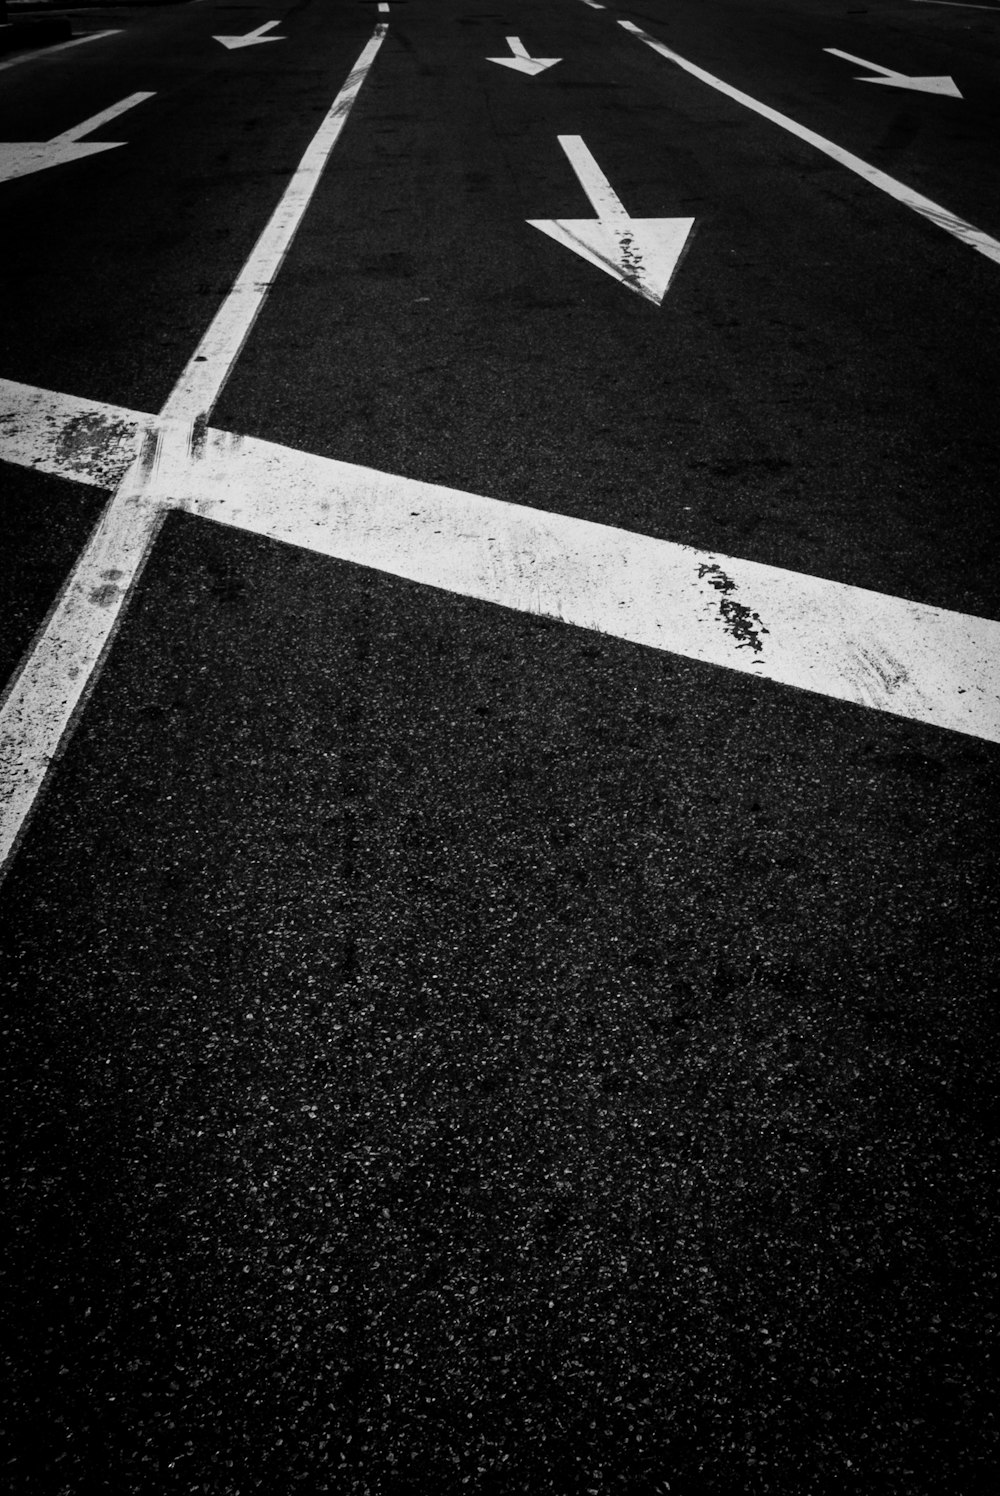 white arrow sign on black and white asphalt road